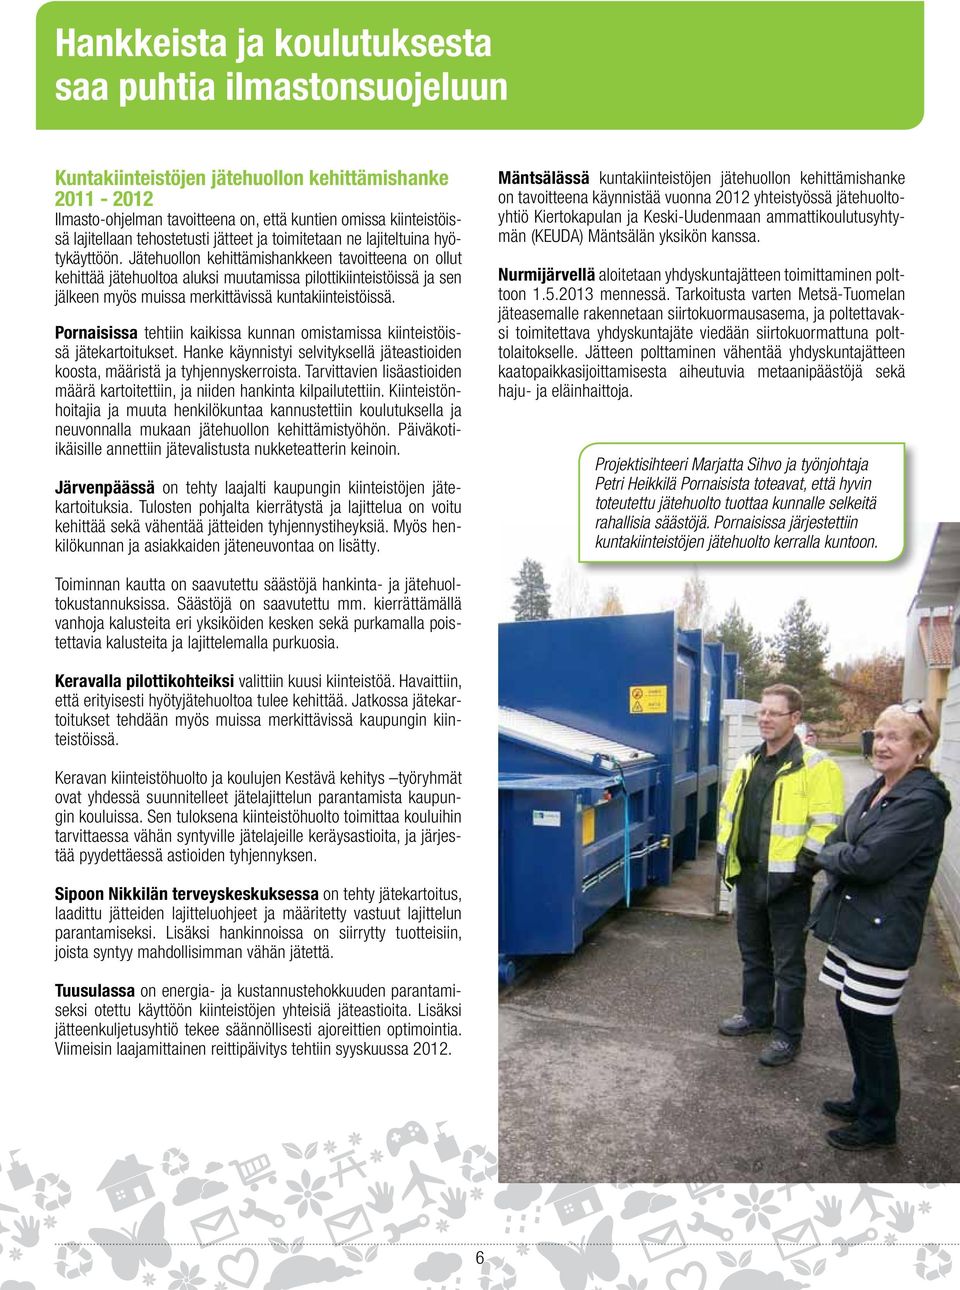 Jätehuollon kehittämishankkeen tavoitteena on ollut kehittää jätehuoltoa aluksi muutamissa pilottikiinteistöissä ja sen jälkeen myös muissa merkittävissä kuntakiinteistöissä.